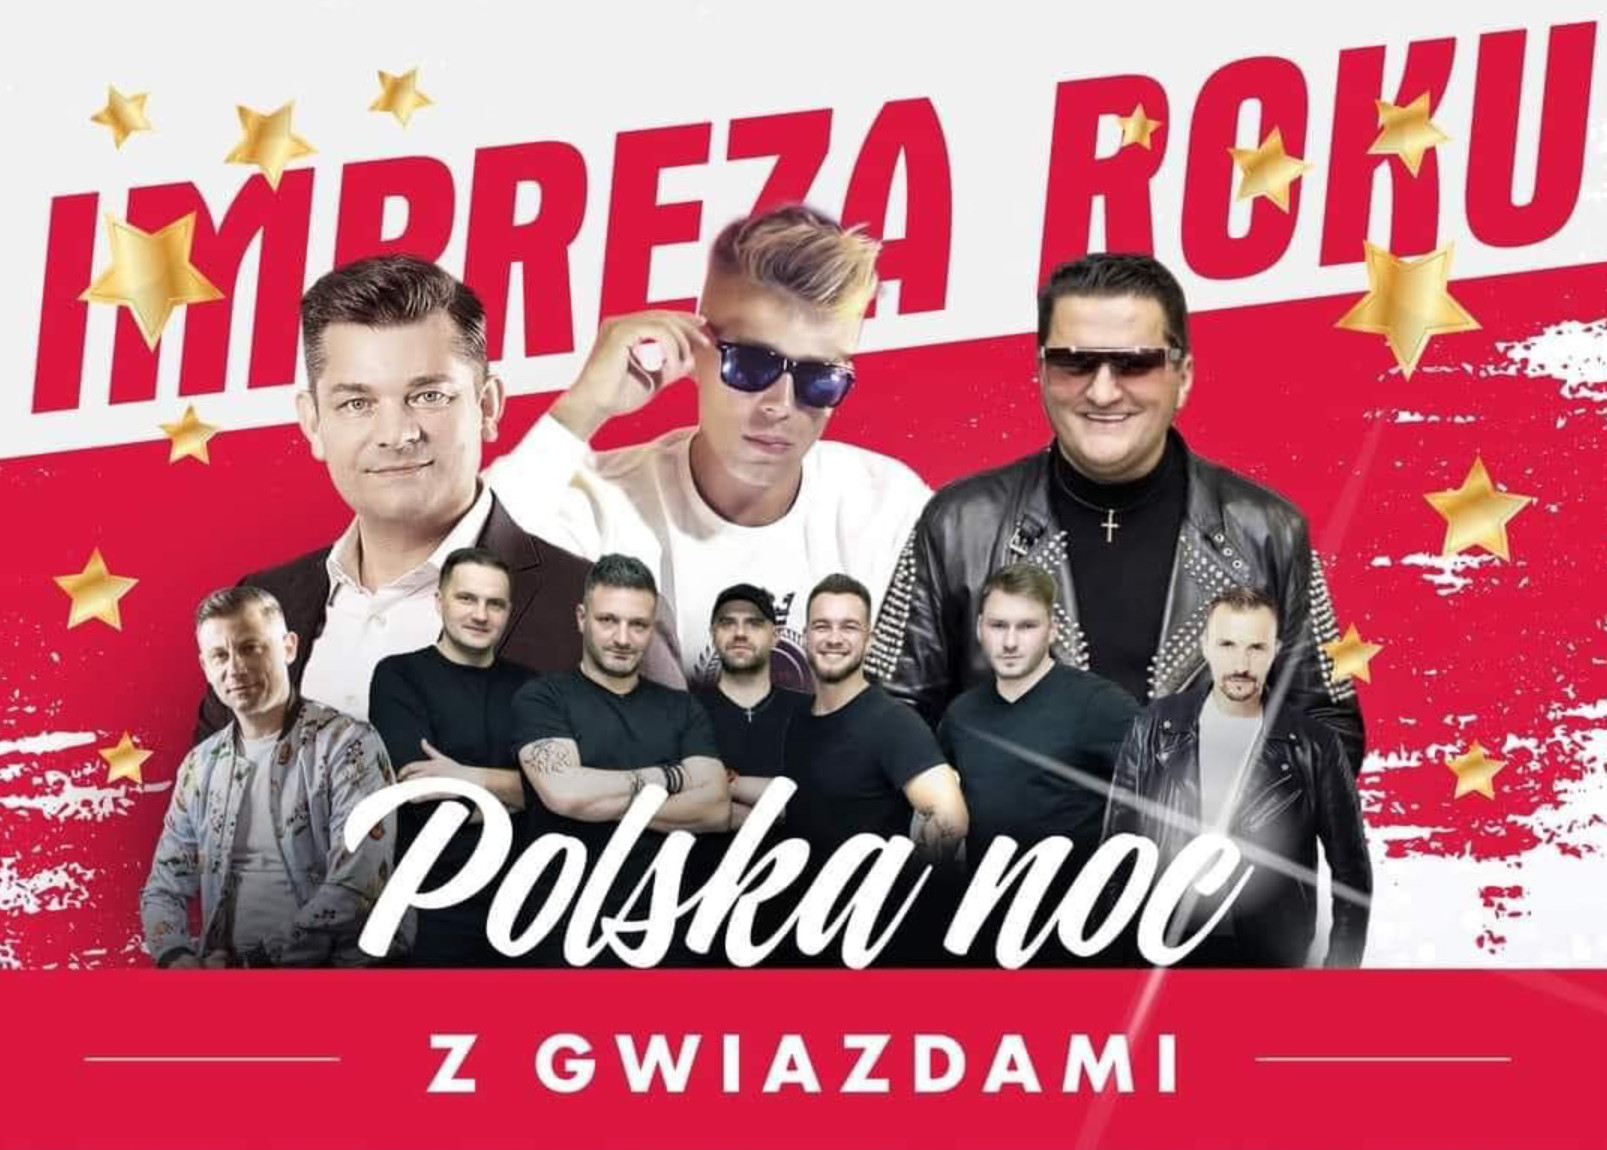 Impreza Roku: Polska Noc z Gwiazdami Disco Polo w USA i Kanadzie